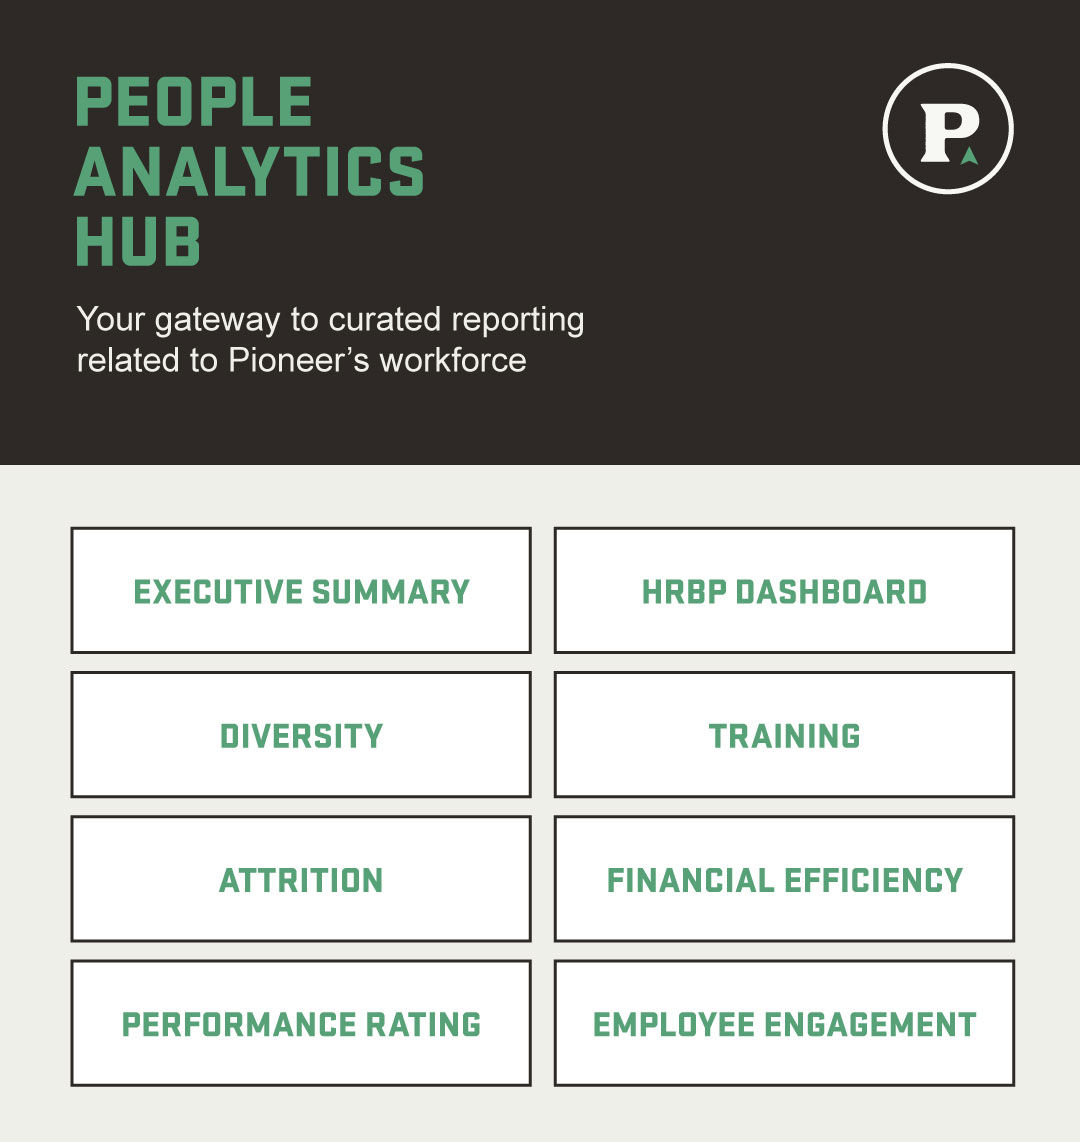 People analytics hub